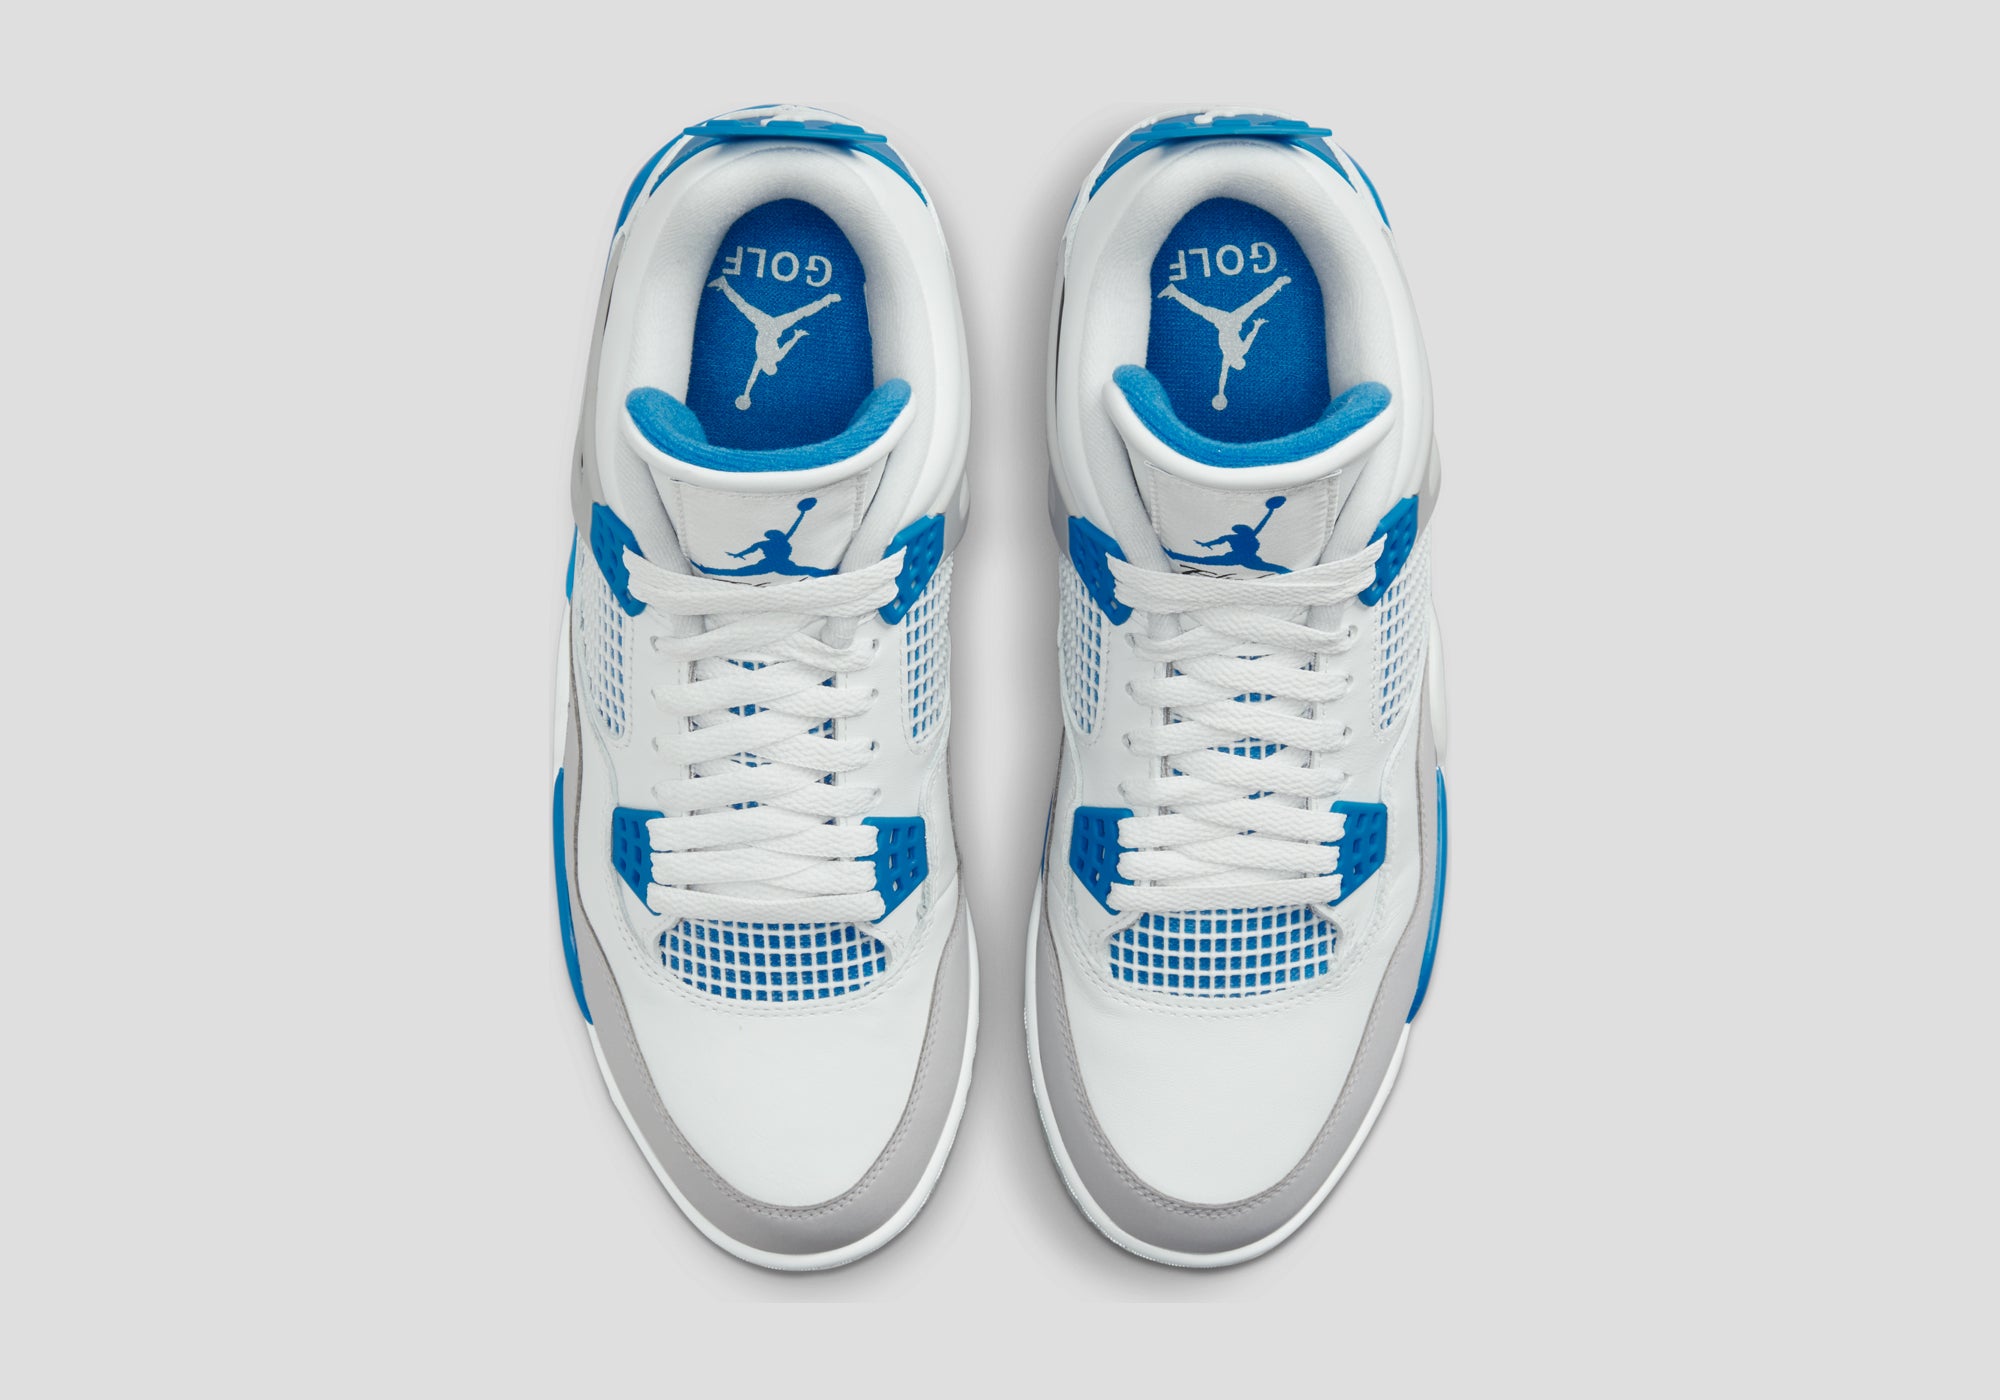 Nike Air Jordan 4 Golf Shoes White/Military Blue-4